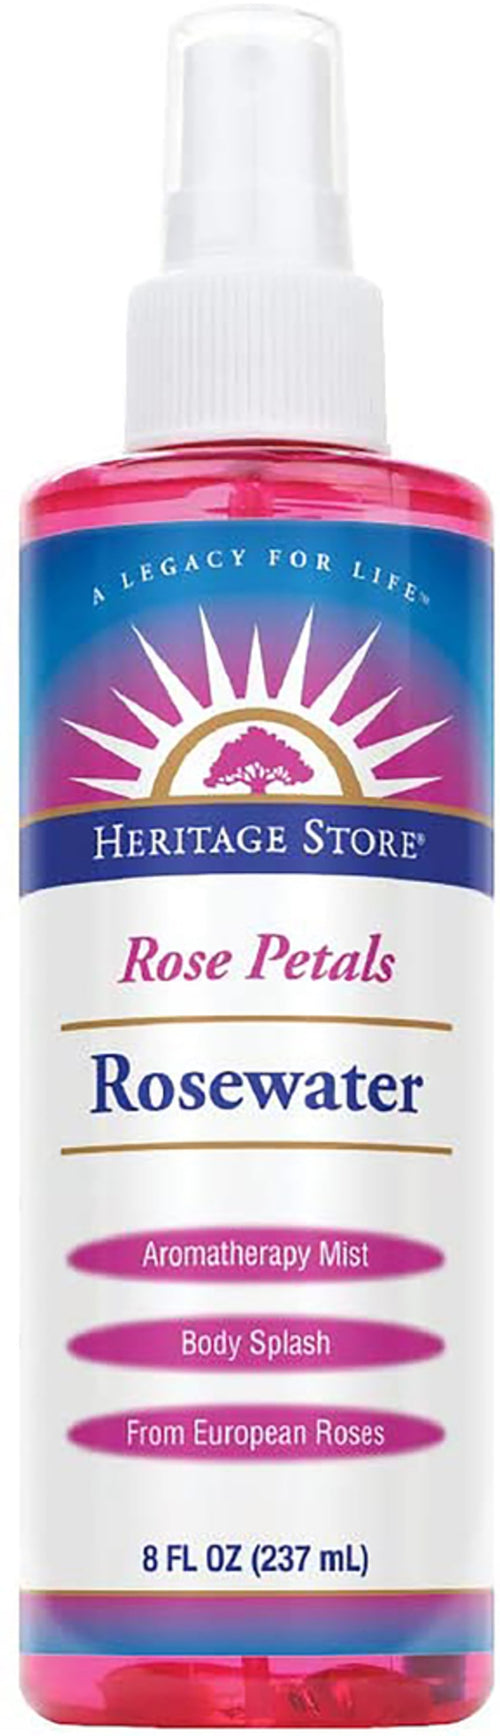 Ružová voda s okvetnými lístkami ruží 8 fl oz 237 ml Fľaša    